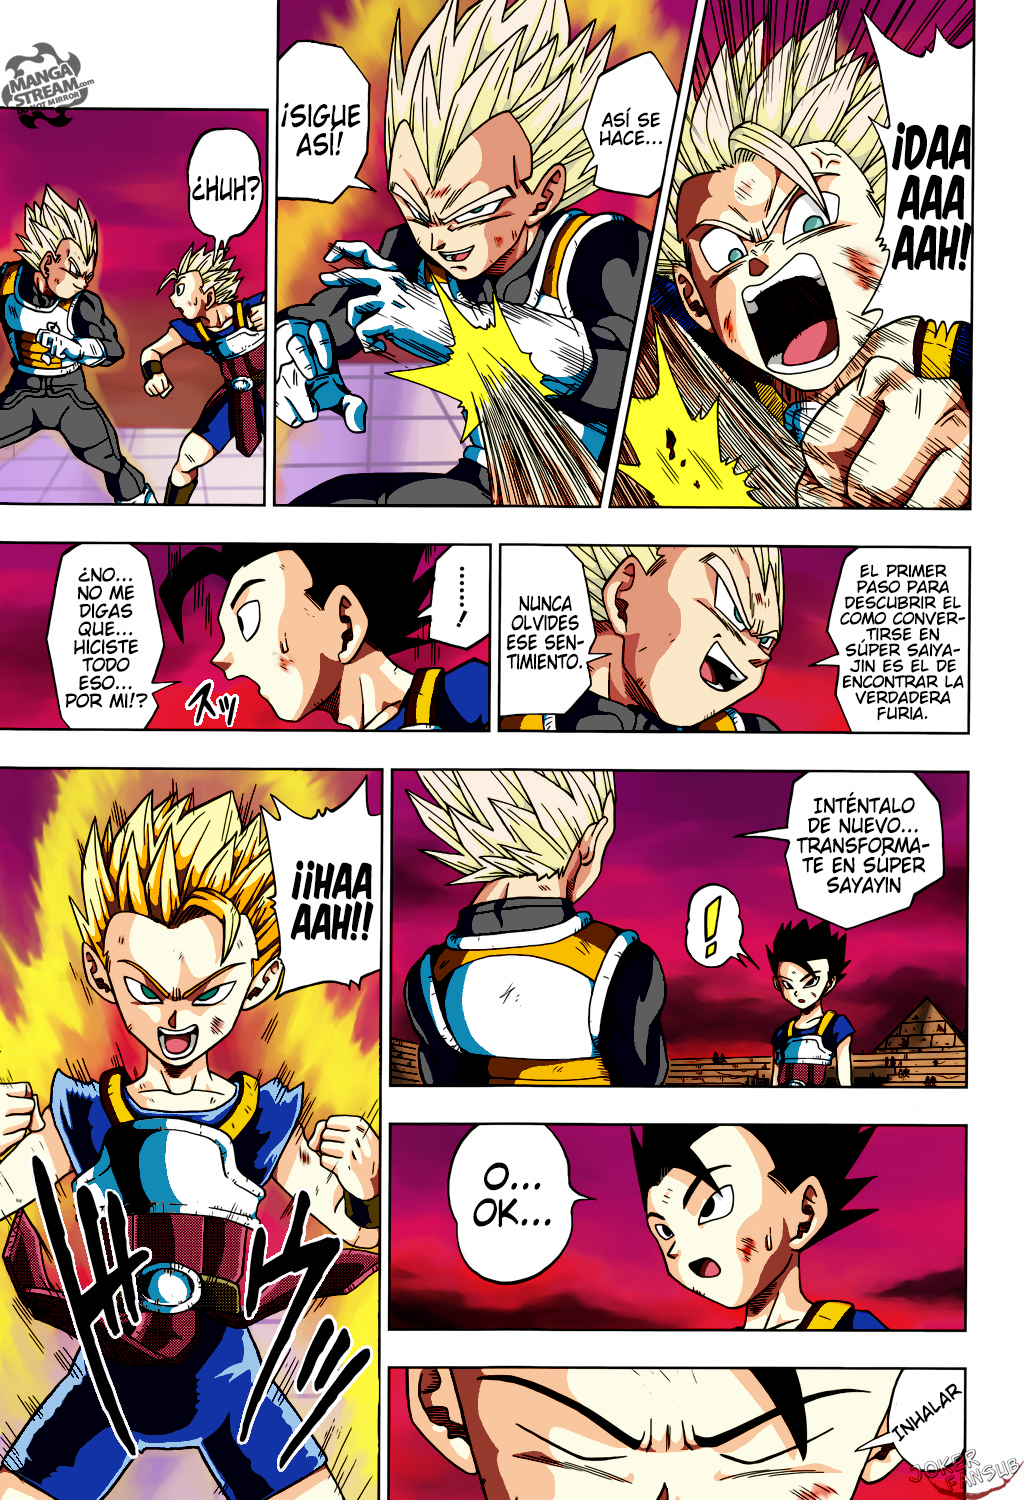 Manga 23 Dragon Ball Super COMPLETO (Español / English